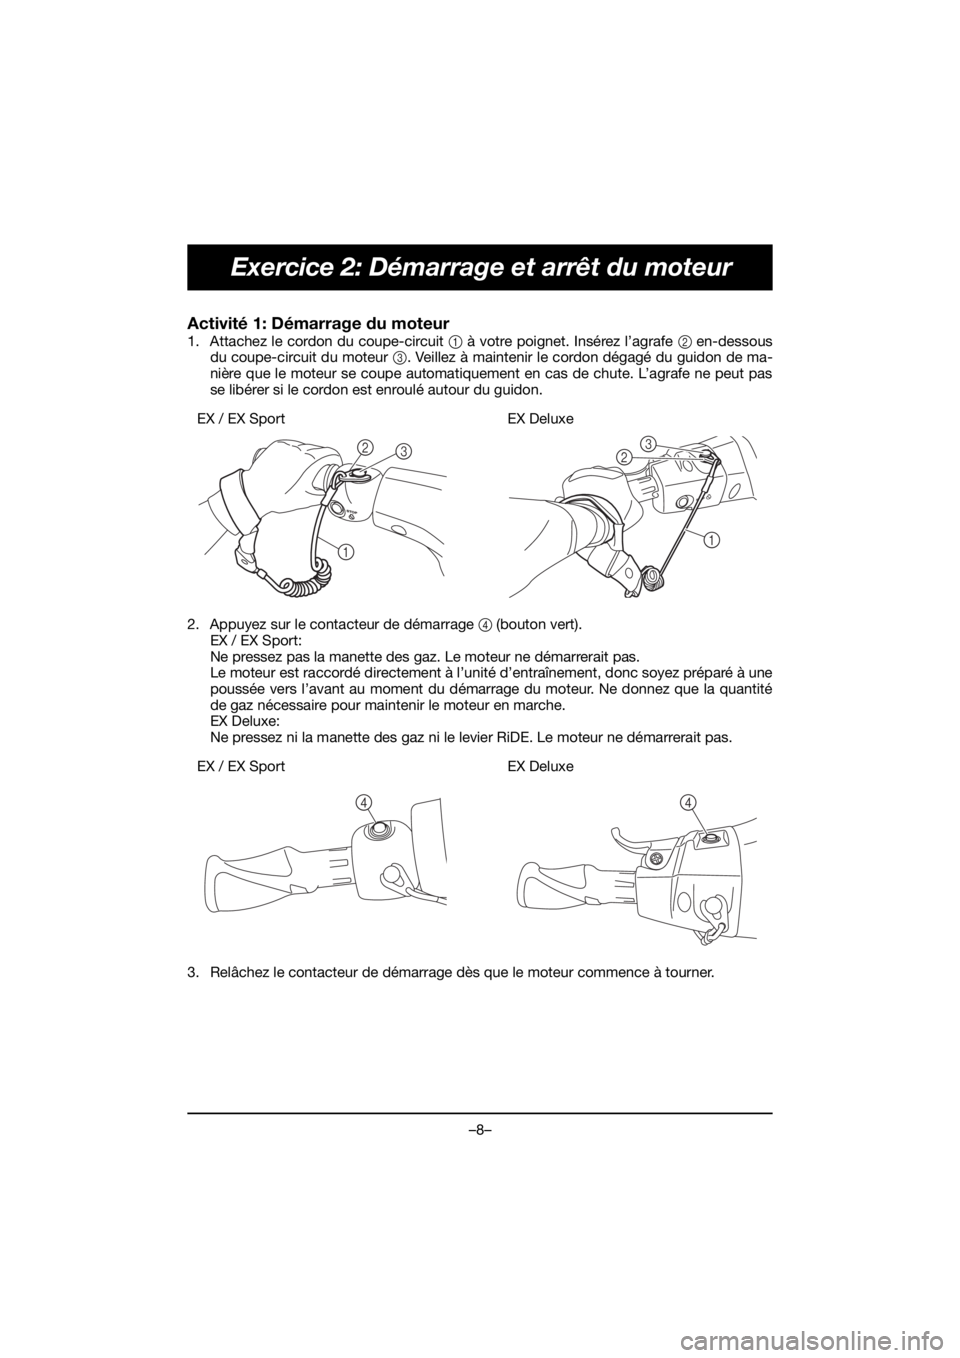 YAMAHA EX 2020  Manual de utilização (in Portuguese) –8–
Exercice 2: Démarrage et arrêt du moteur
Activité 1: Démarrage du moteur 
1. Attachez le cordon du coupe-circuit 1 à votre poignet. Insérez l’agrafe 2 en-dessous
du coupe-circuit du mo